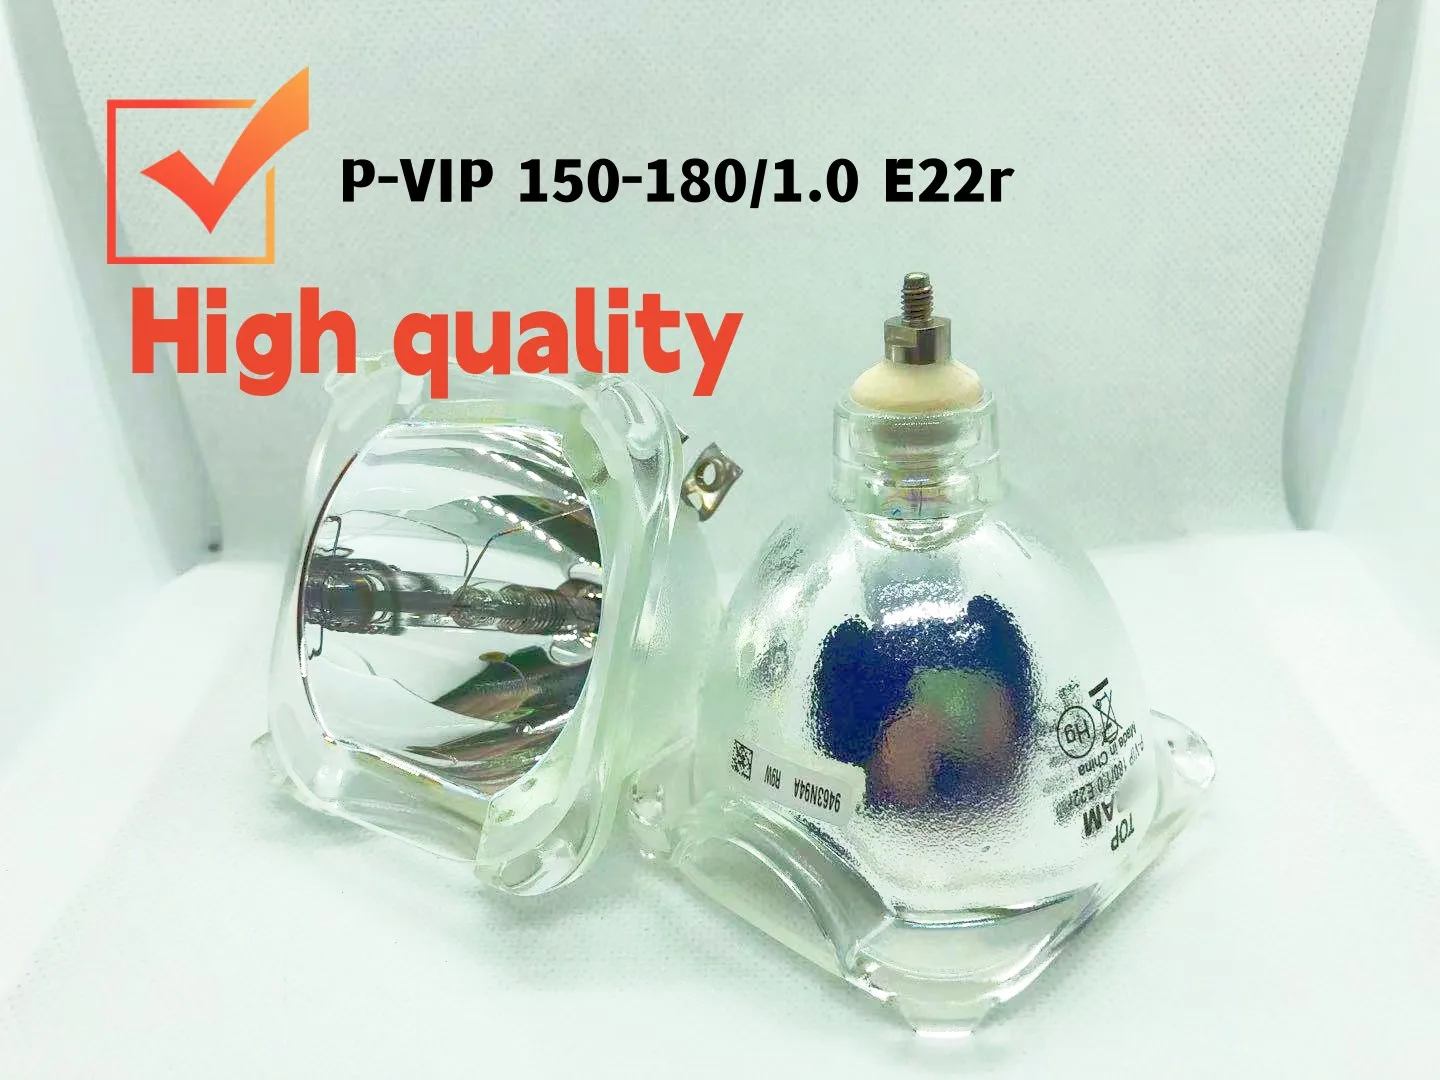 Самая продаваемая Оригинальная лампа для проектора P-VIP 150-180/1.0 E22r = P-VIP 150-180/1.0 E22h = P-VIP 180/1.0 E22r 150W 180W E22